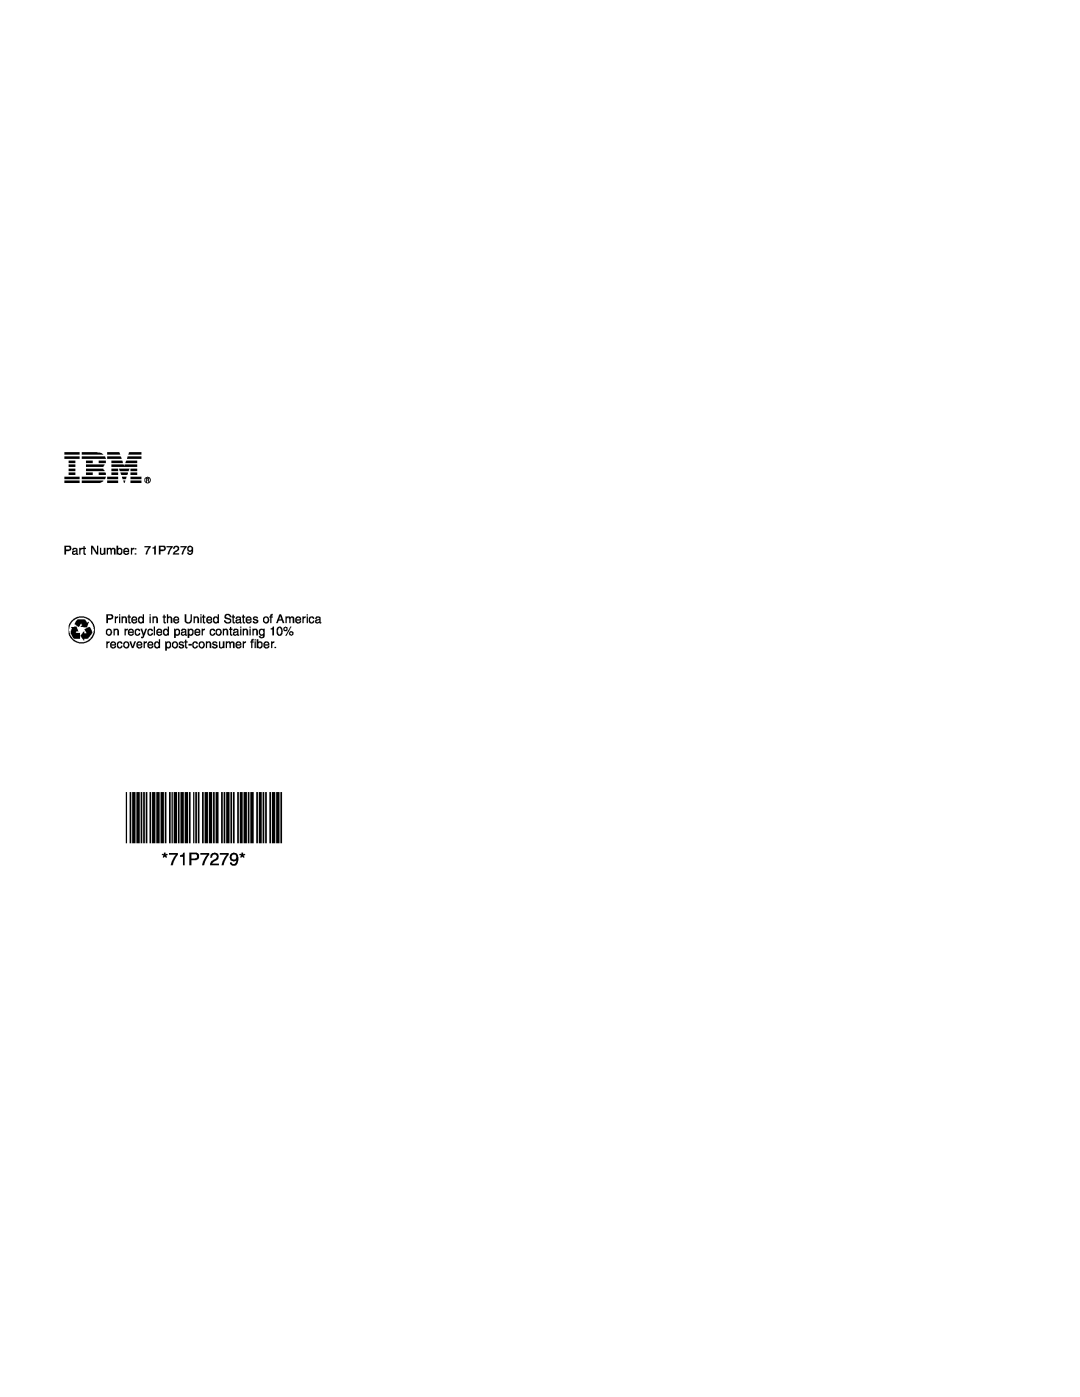 IBM manual Part Number 71P7279 